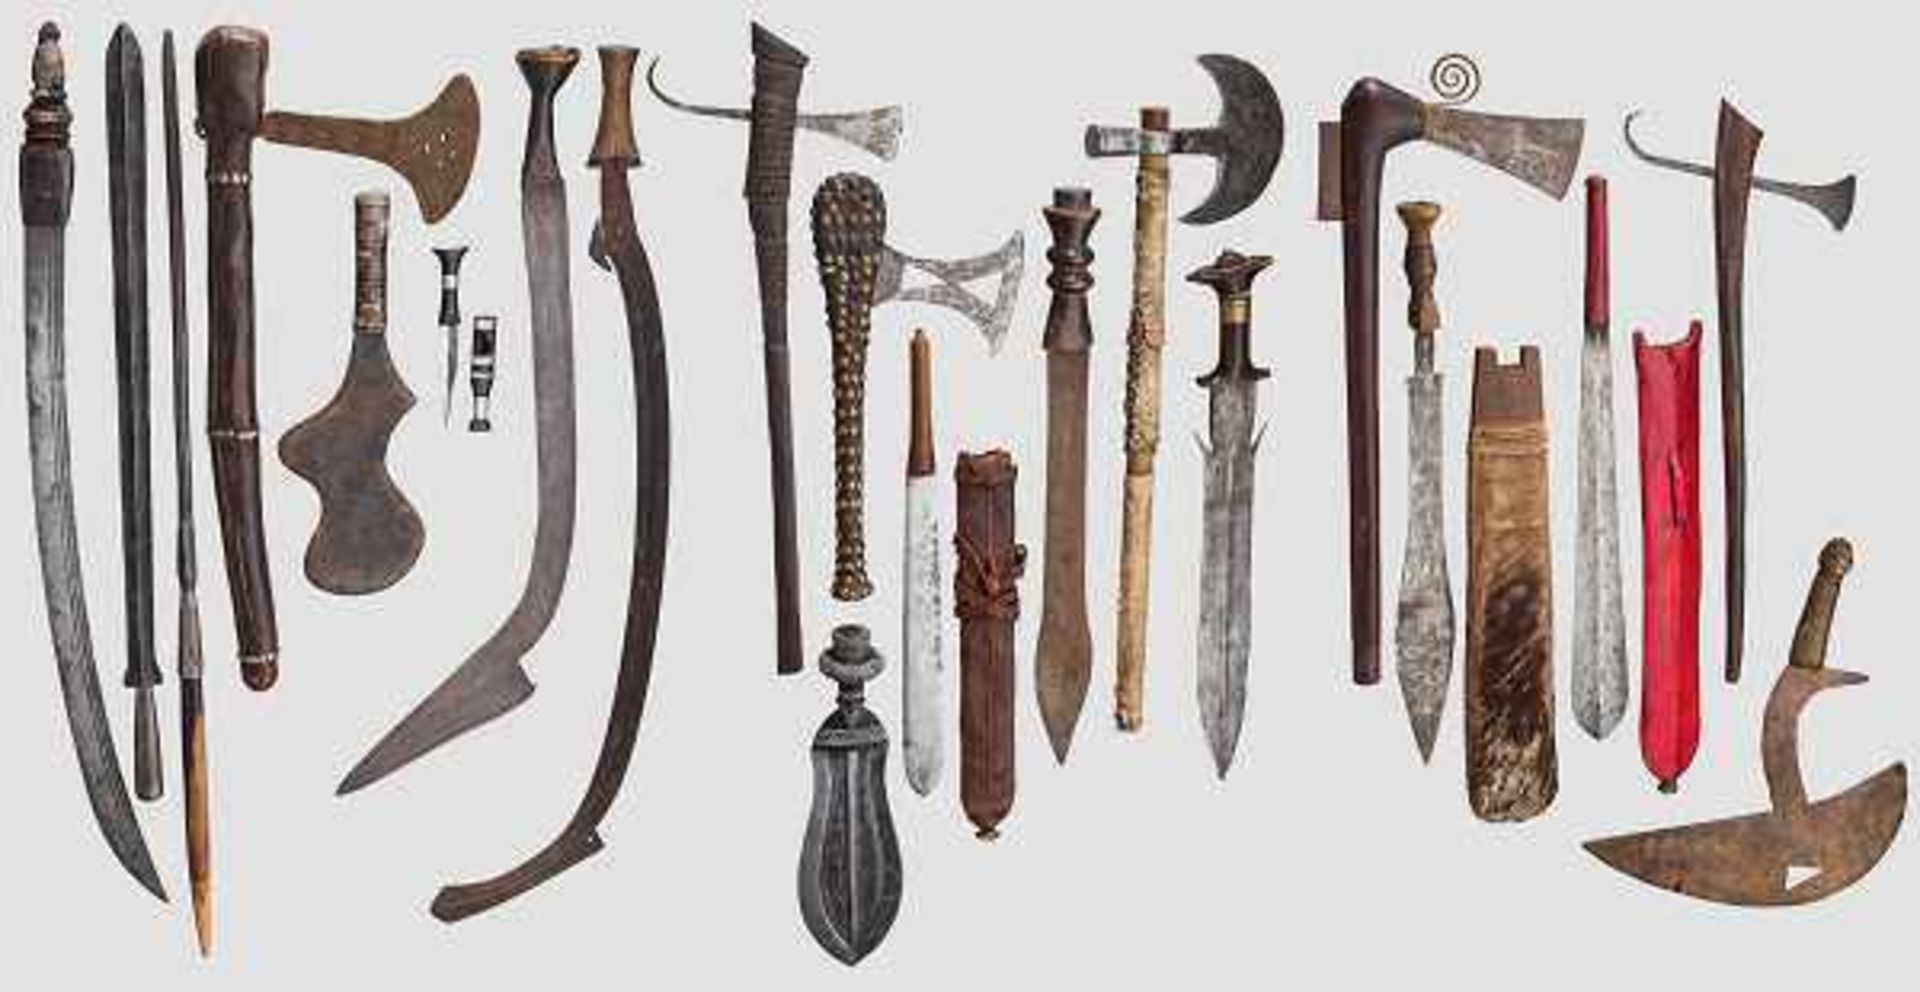 Sammlung von 19 afrikanischen Waffen Darunter sechs unterschiedliche Äxte, zwei Sichelmesser, fünf